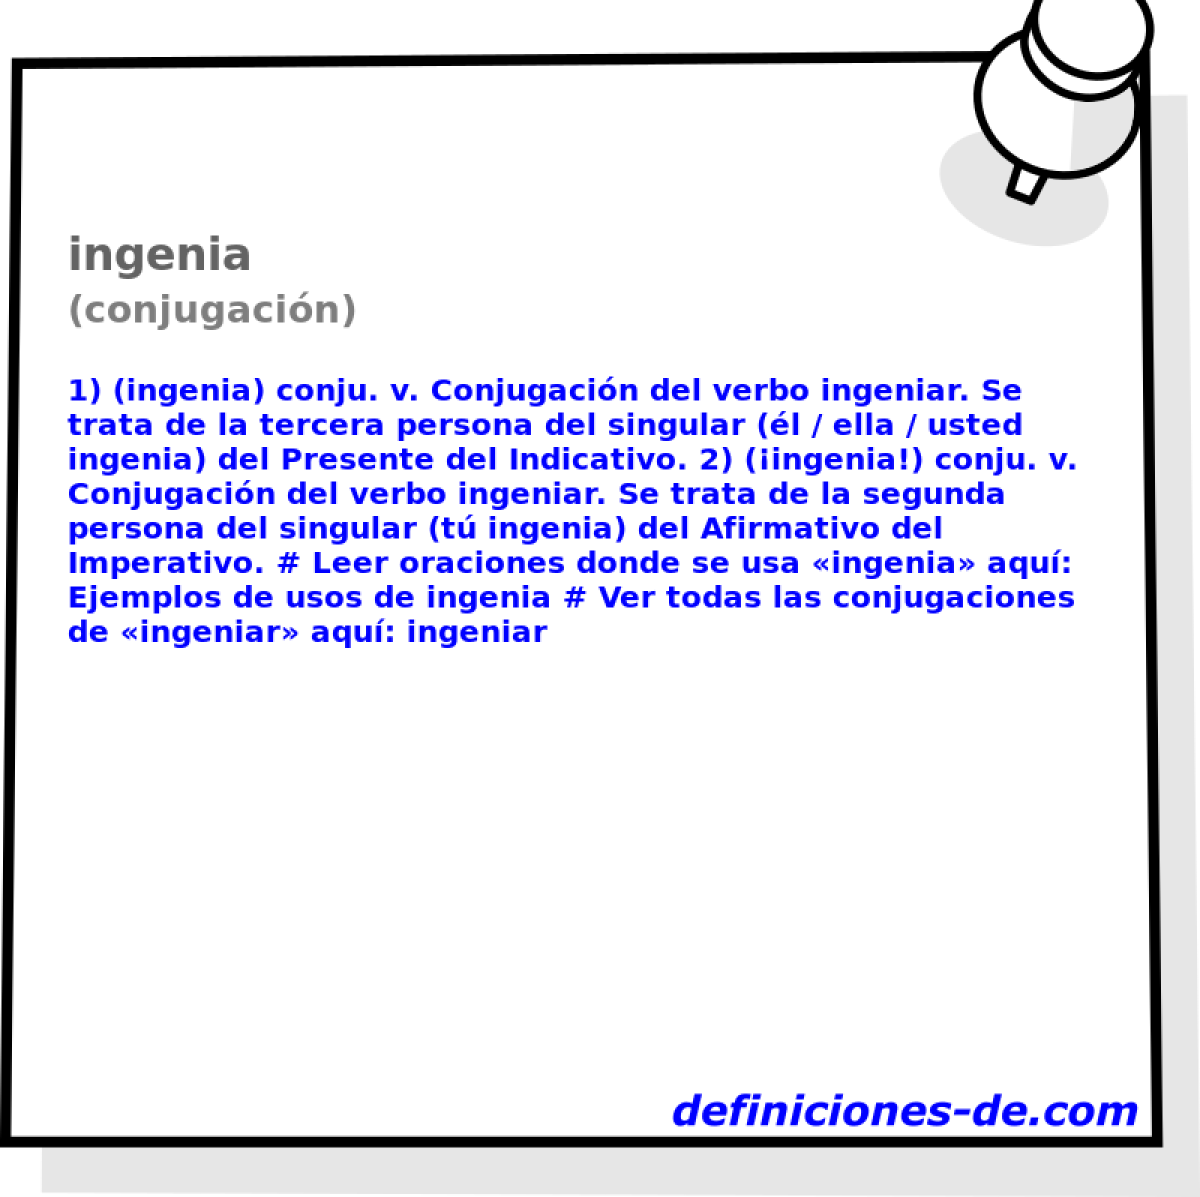 ingenia (conjugacin)